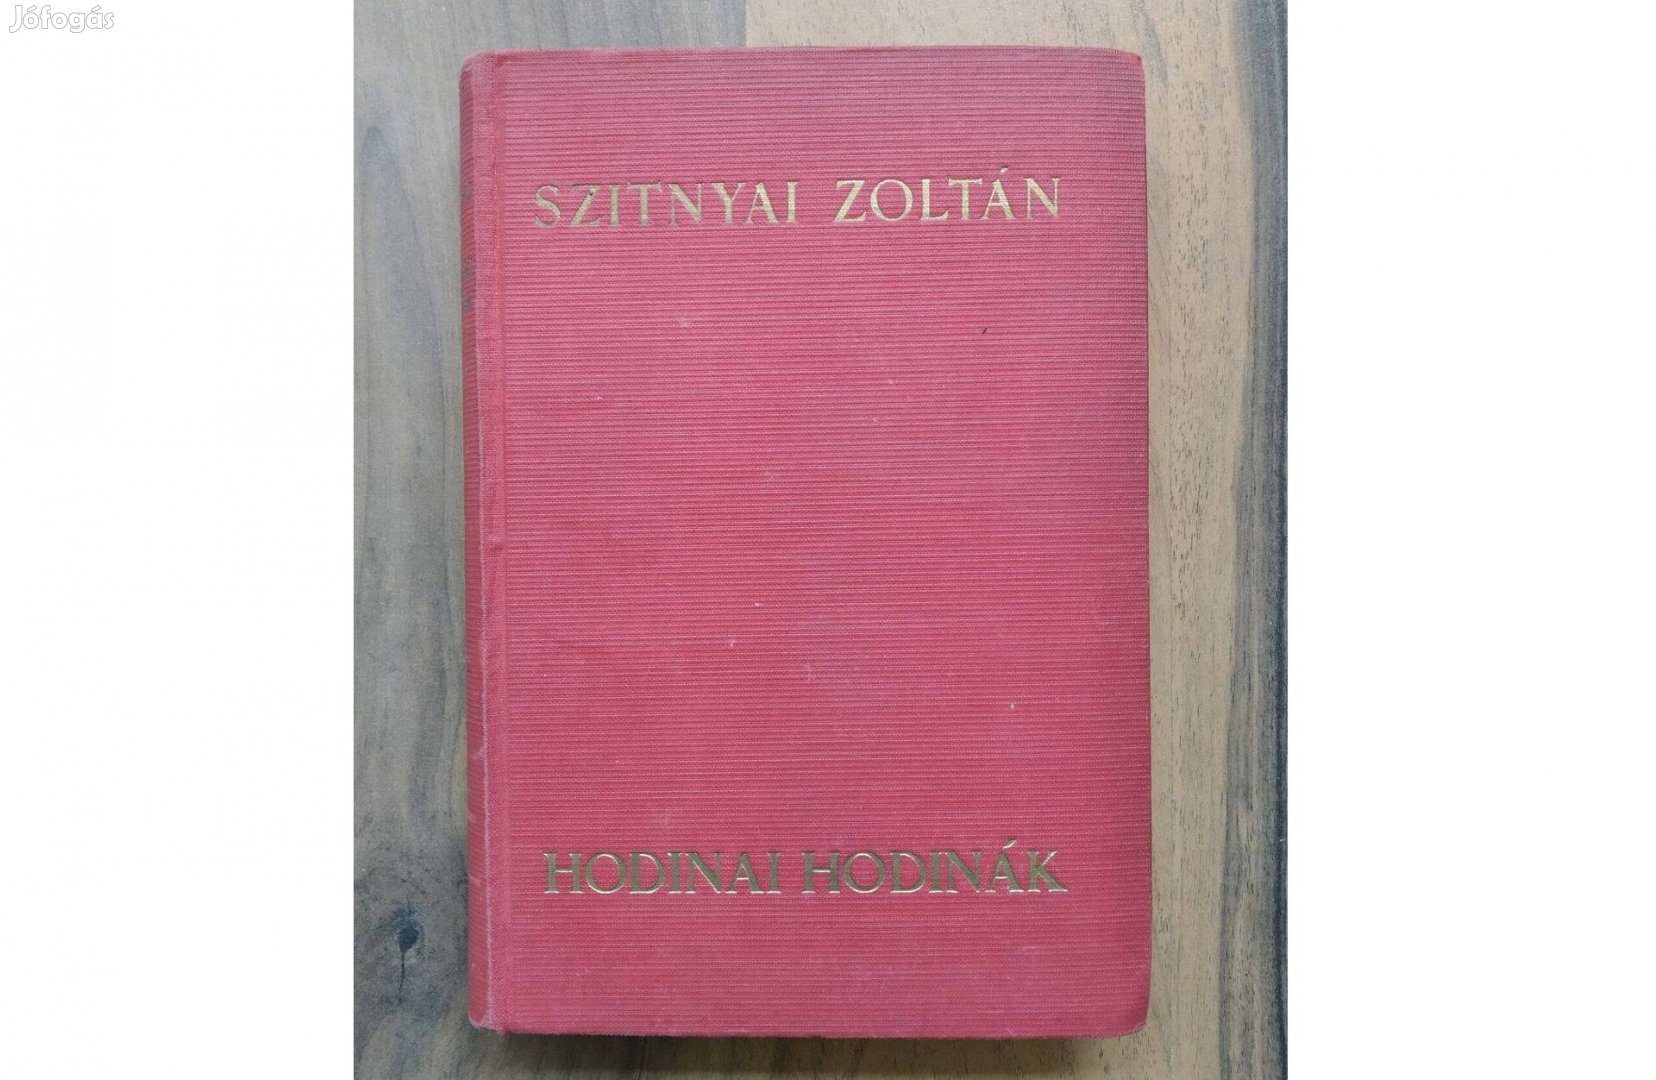 Szitnyai Zoltán: Hodinai Hodinák - Athenaeum kiadás antik könyv